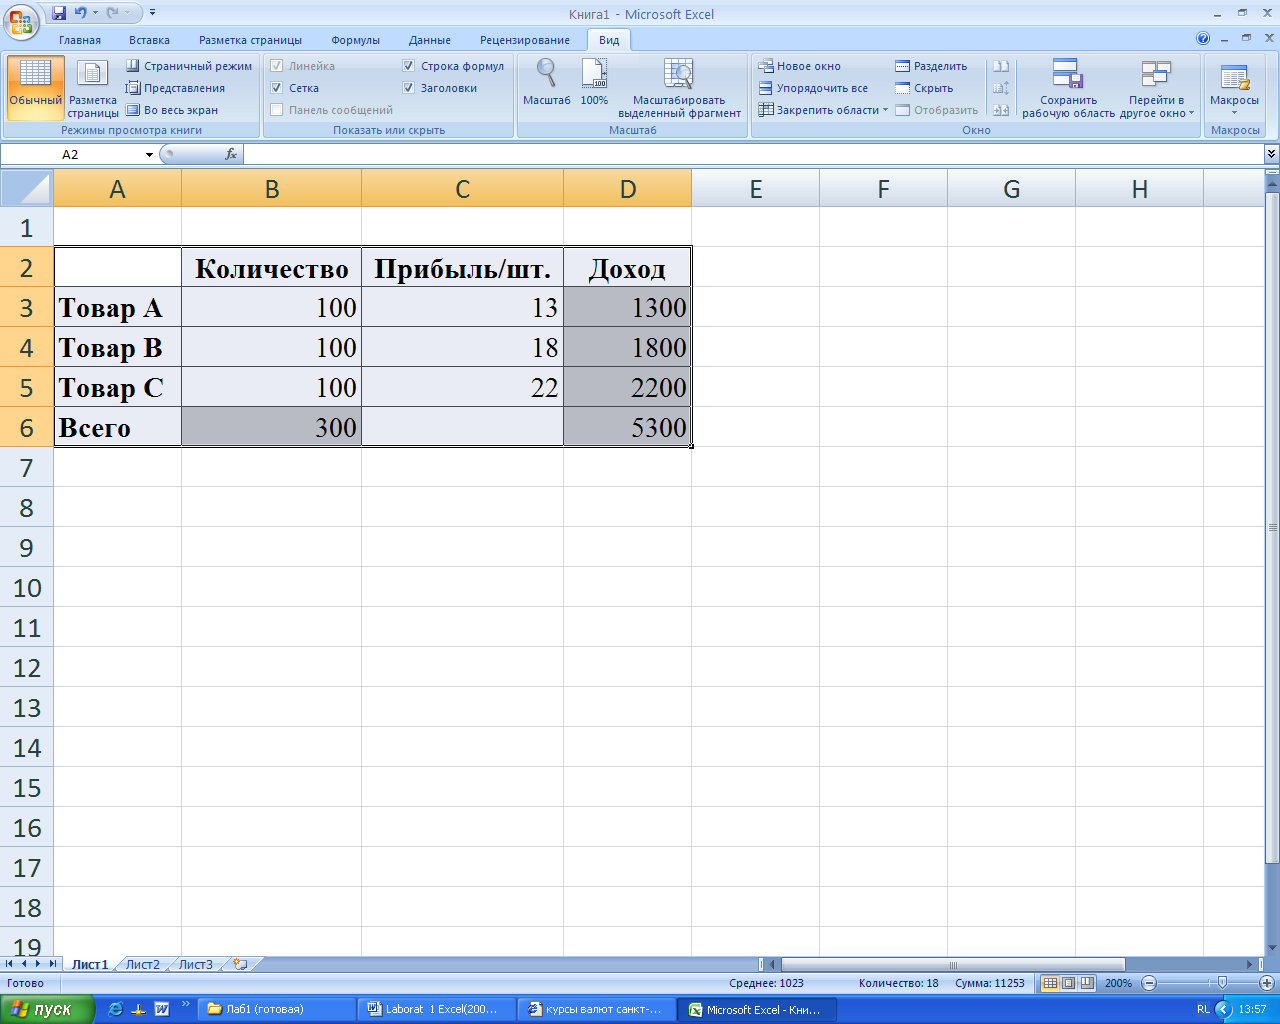 Реферат: КОНСОЛИДАЦИЯ ДАННЫХ И ФИЛЬТРЫ В MicroSoft Excel